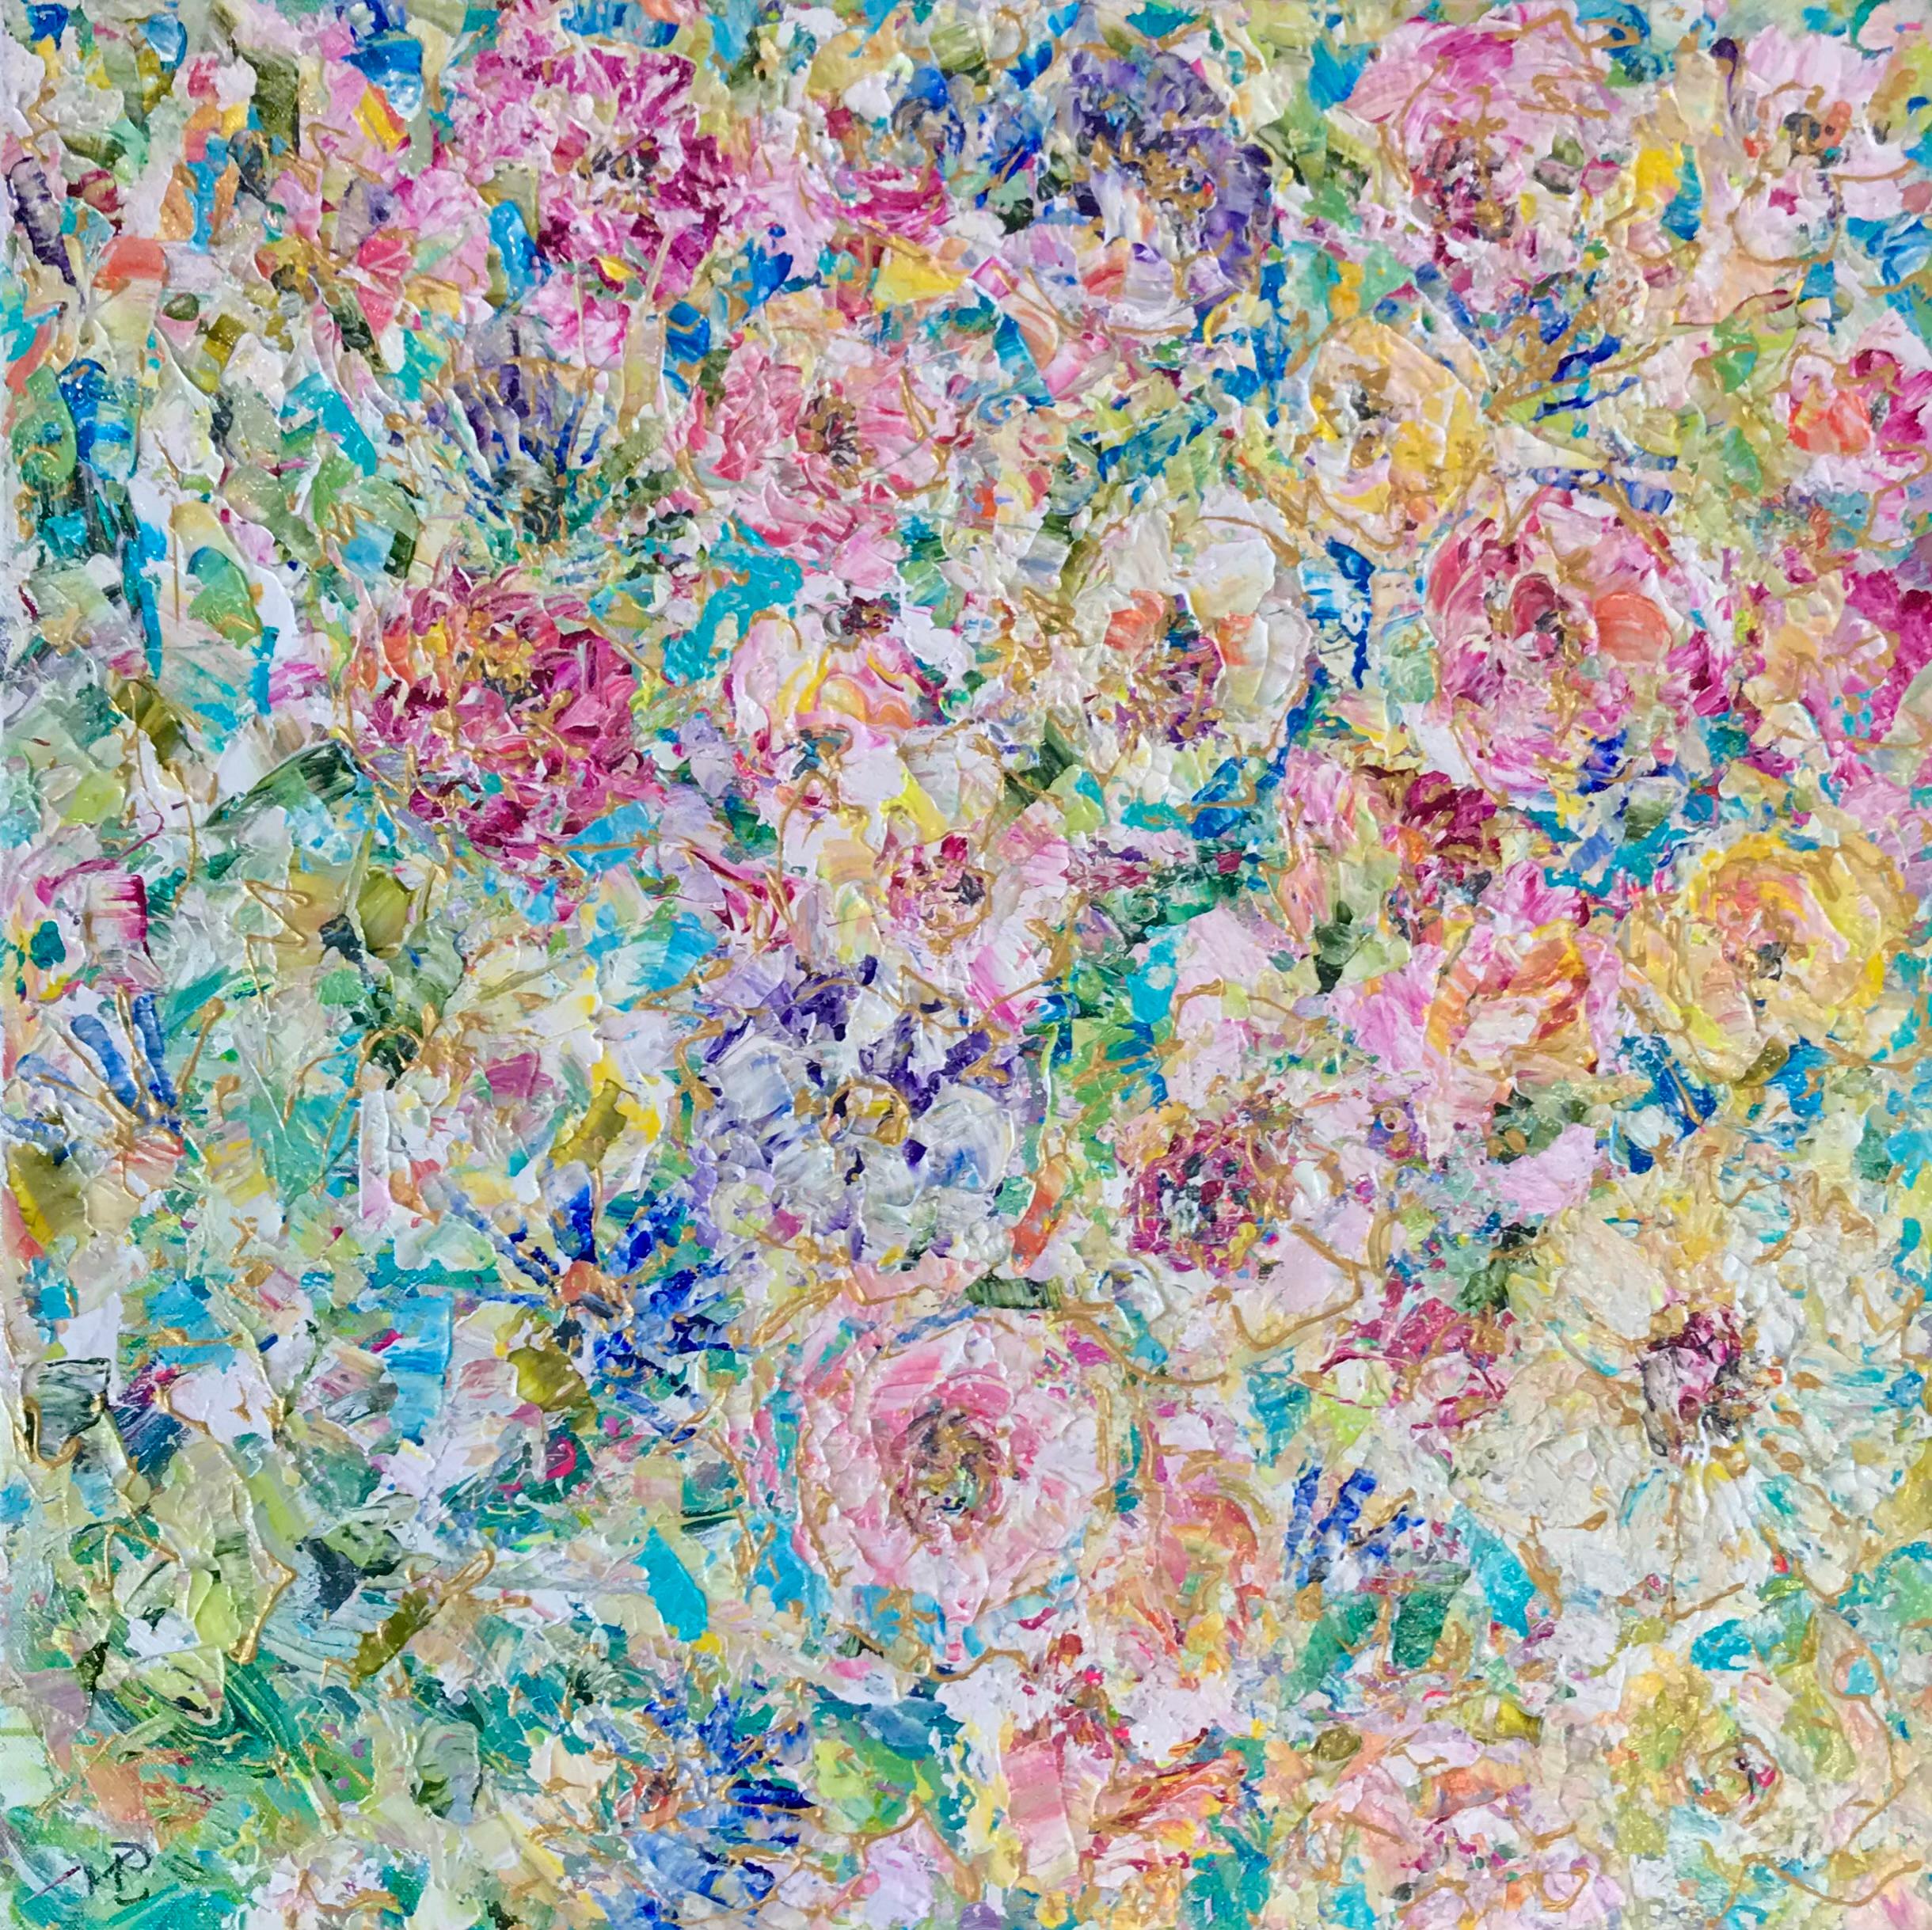 Figurative Painting Jan Rogers - Confettis floraux